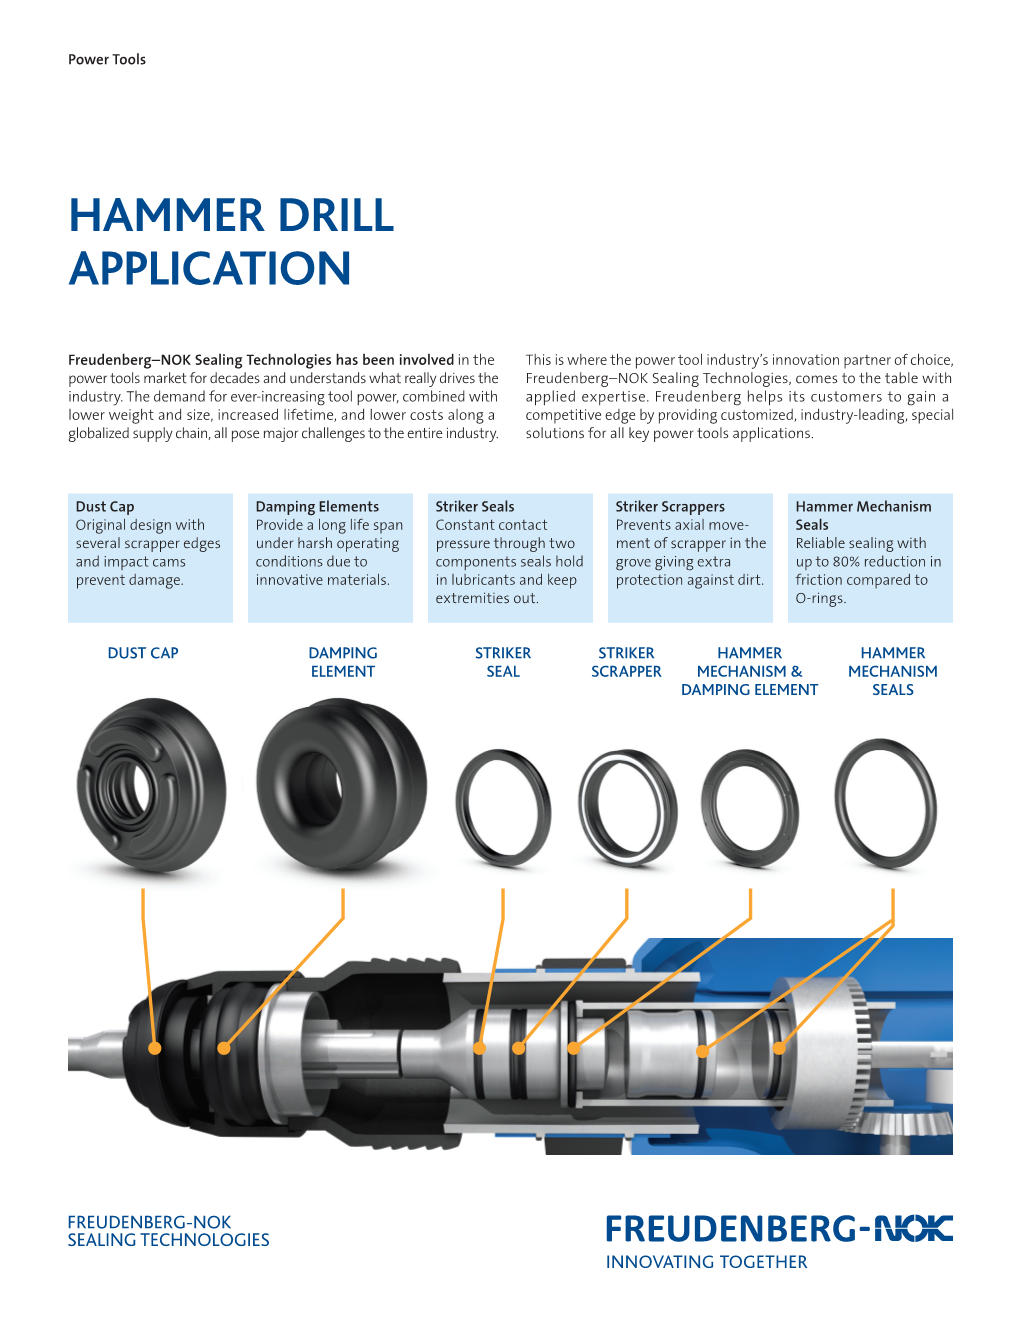 FNST Hammer Drill Application